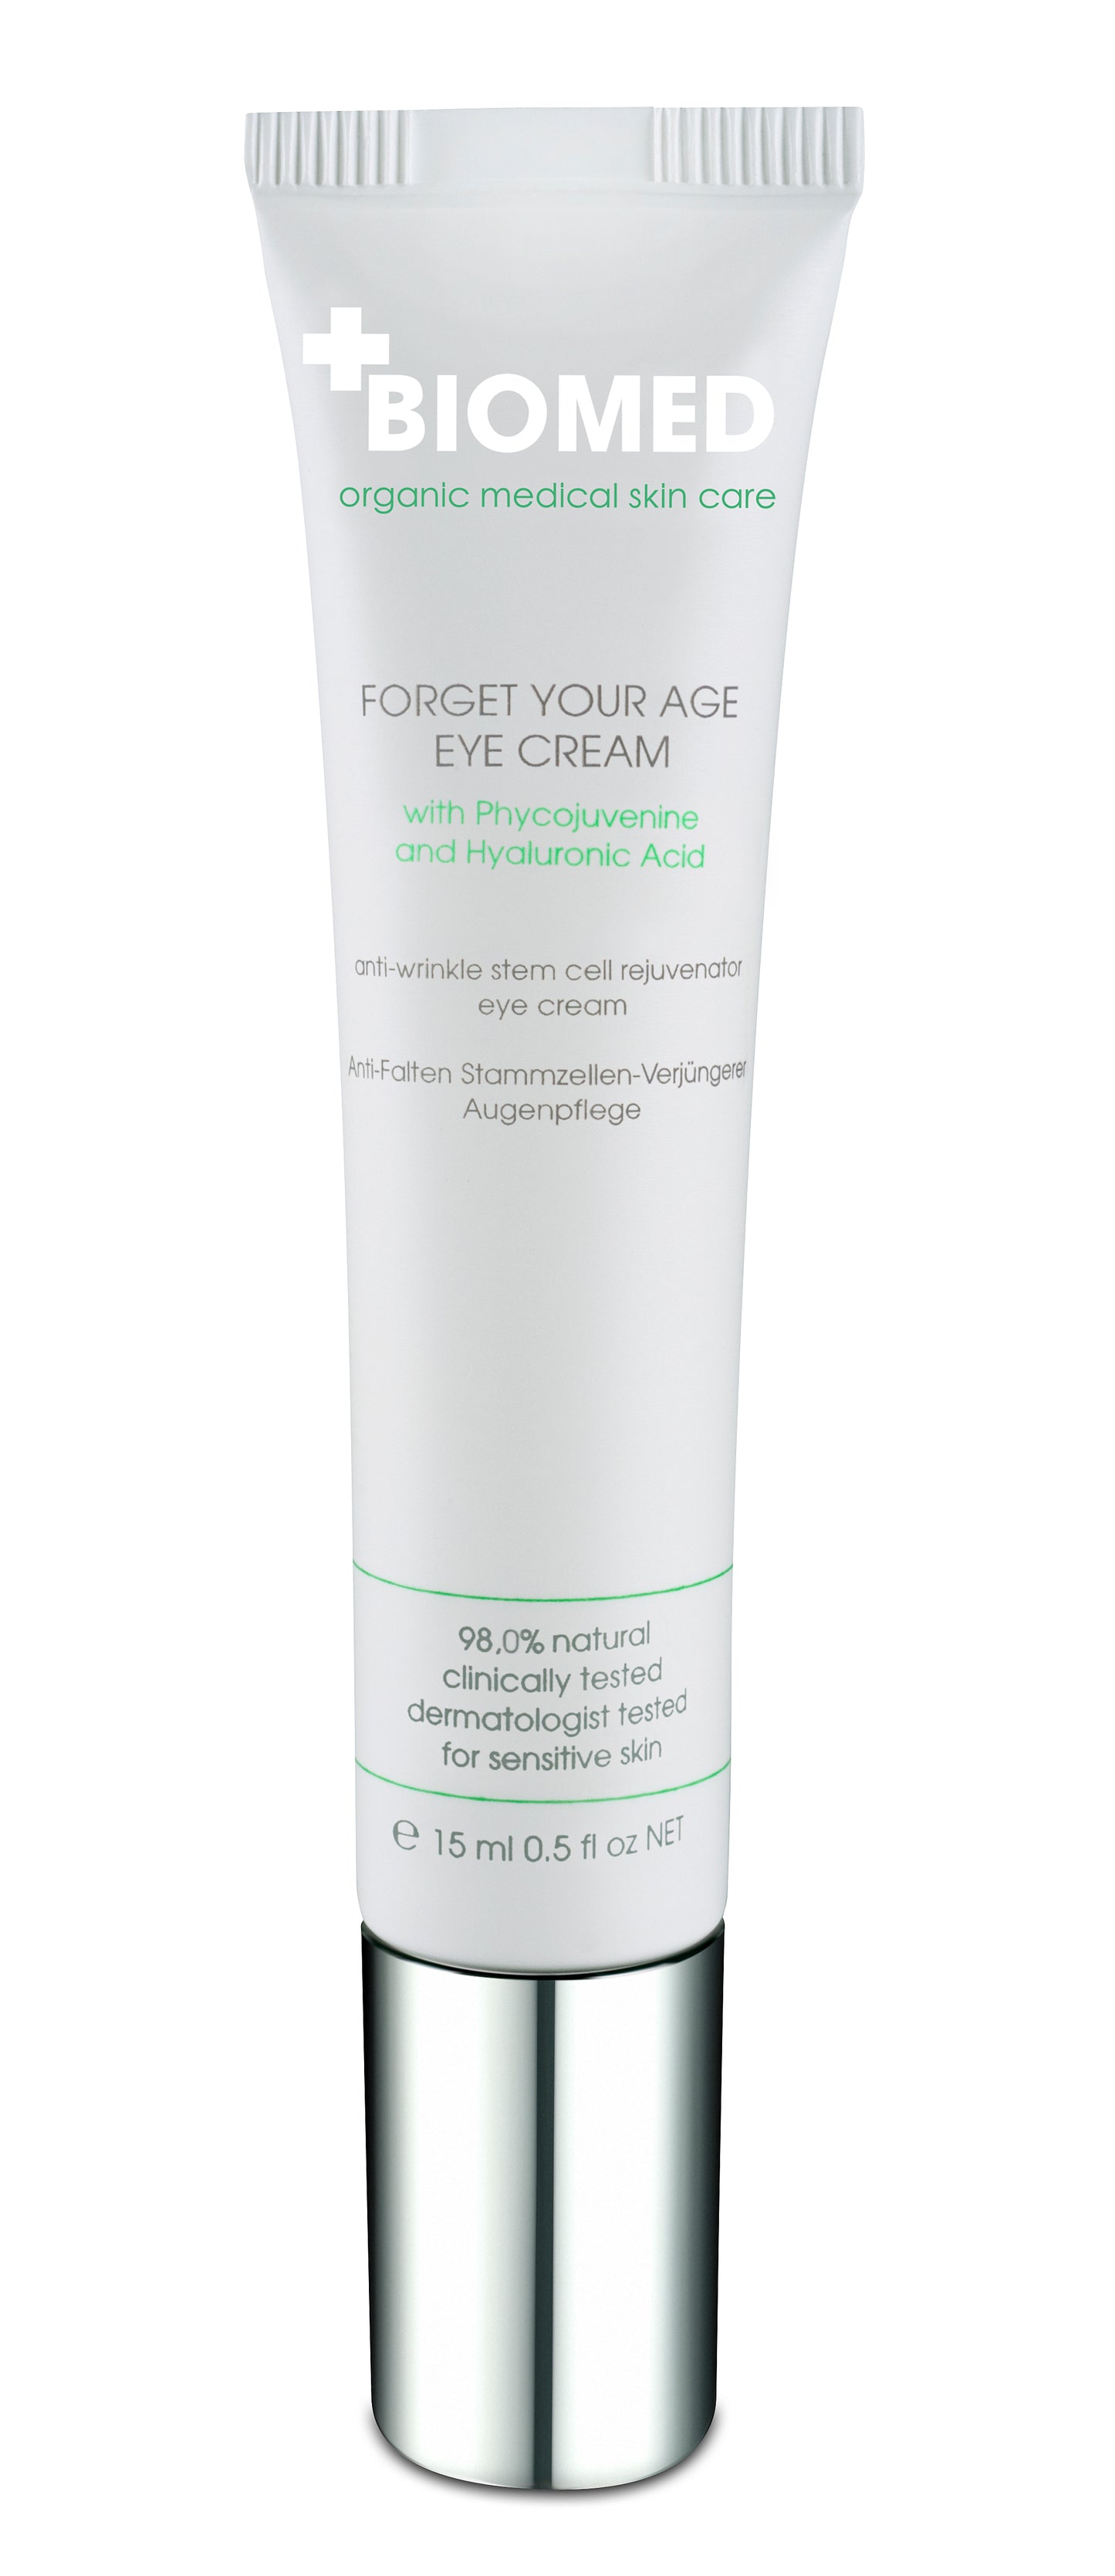 Biomed - Crème Yeux Antirides Forget Your Age Eye Cream, soin contour des yeux anti-rides pour une peau rajeunie